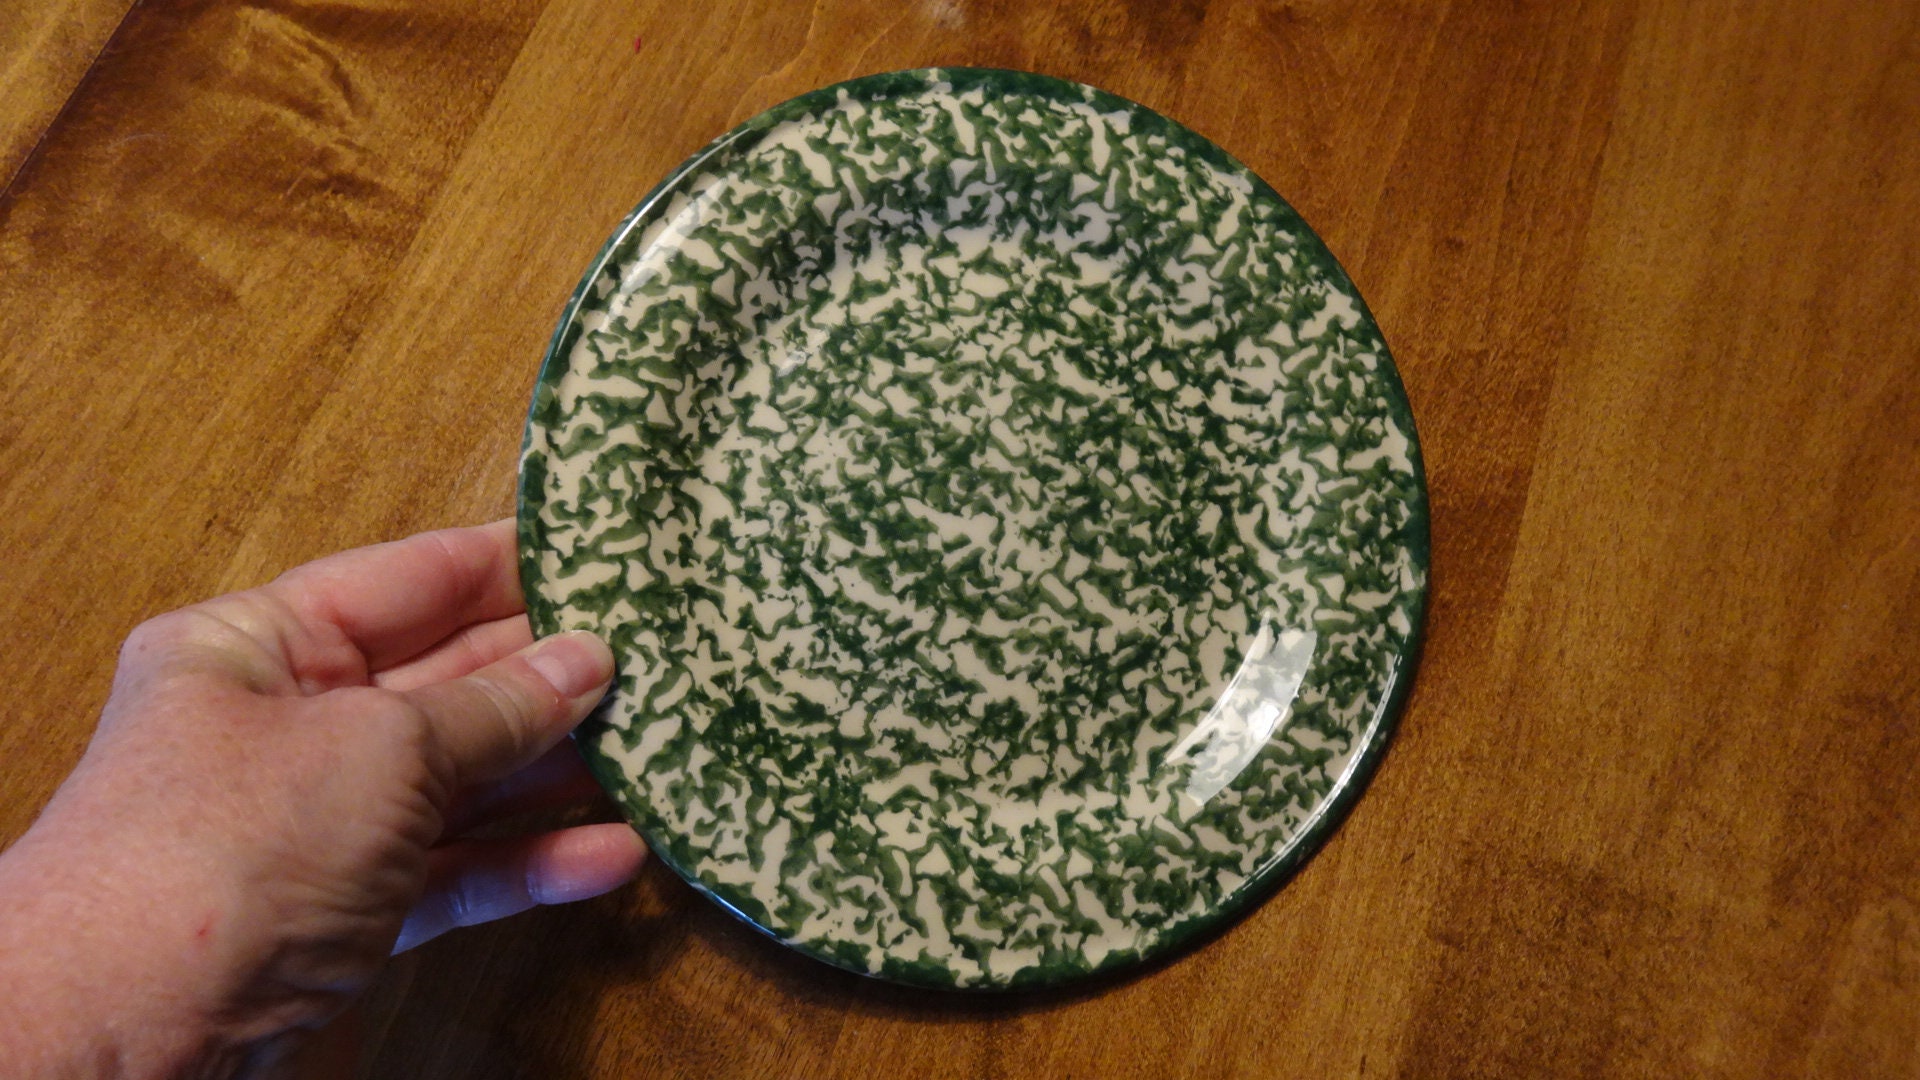 9 3/4 Roseville Ohio Sponge Paint Plate, Dinner Plate, Green